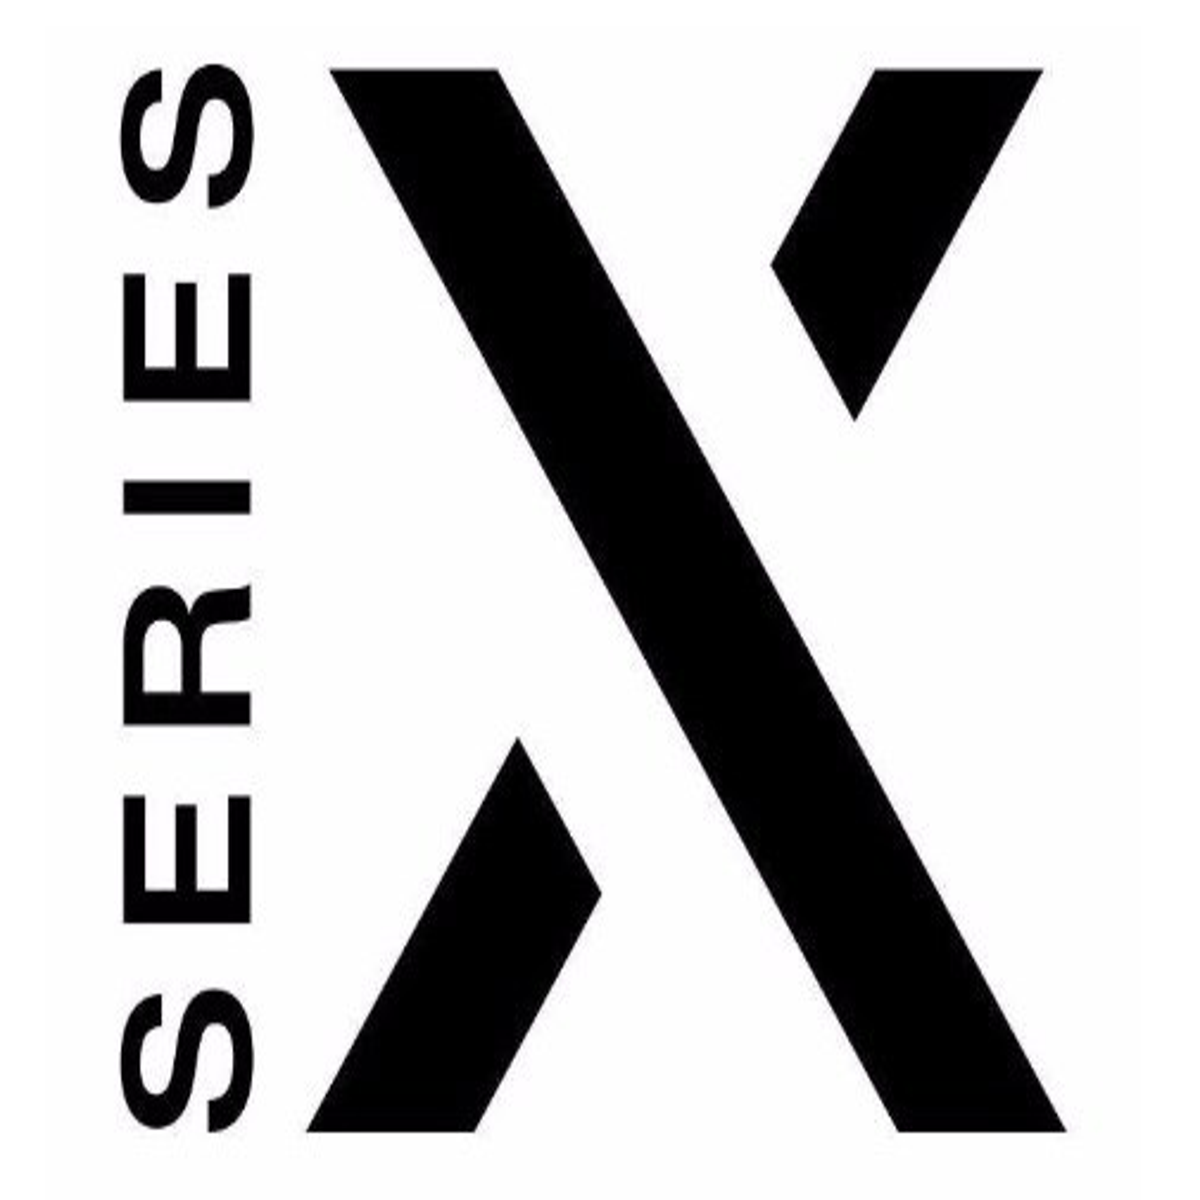 xbox logo black and white